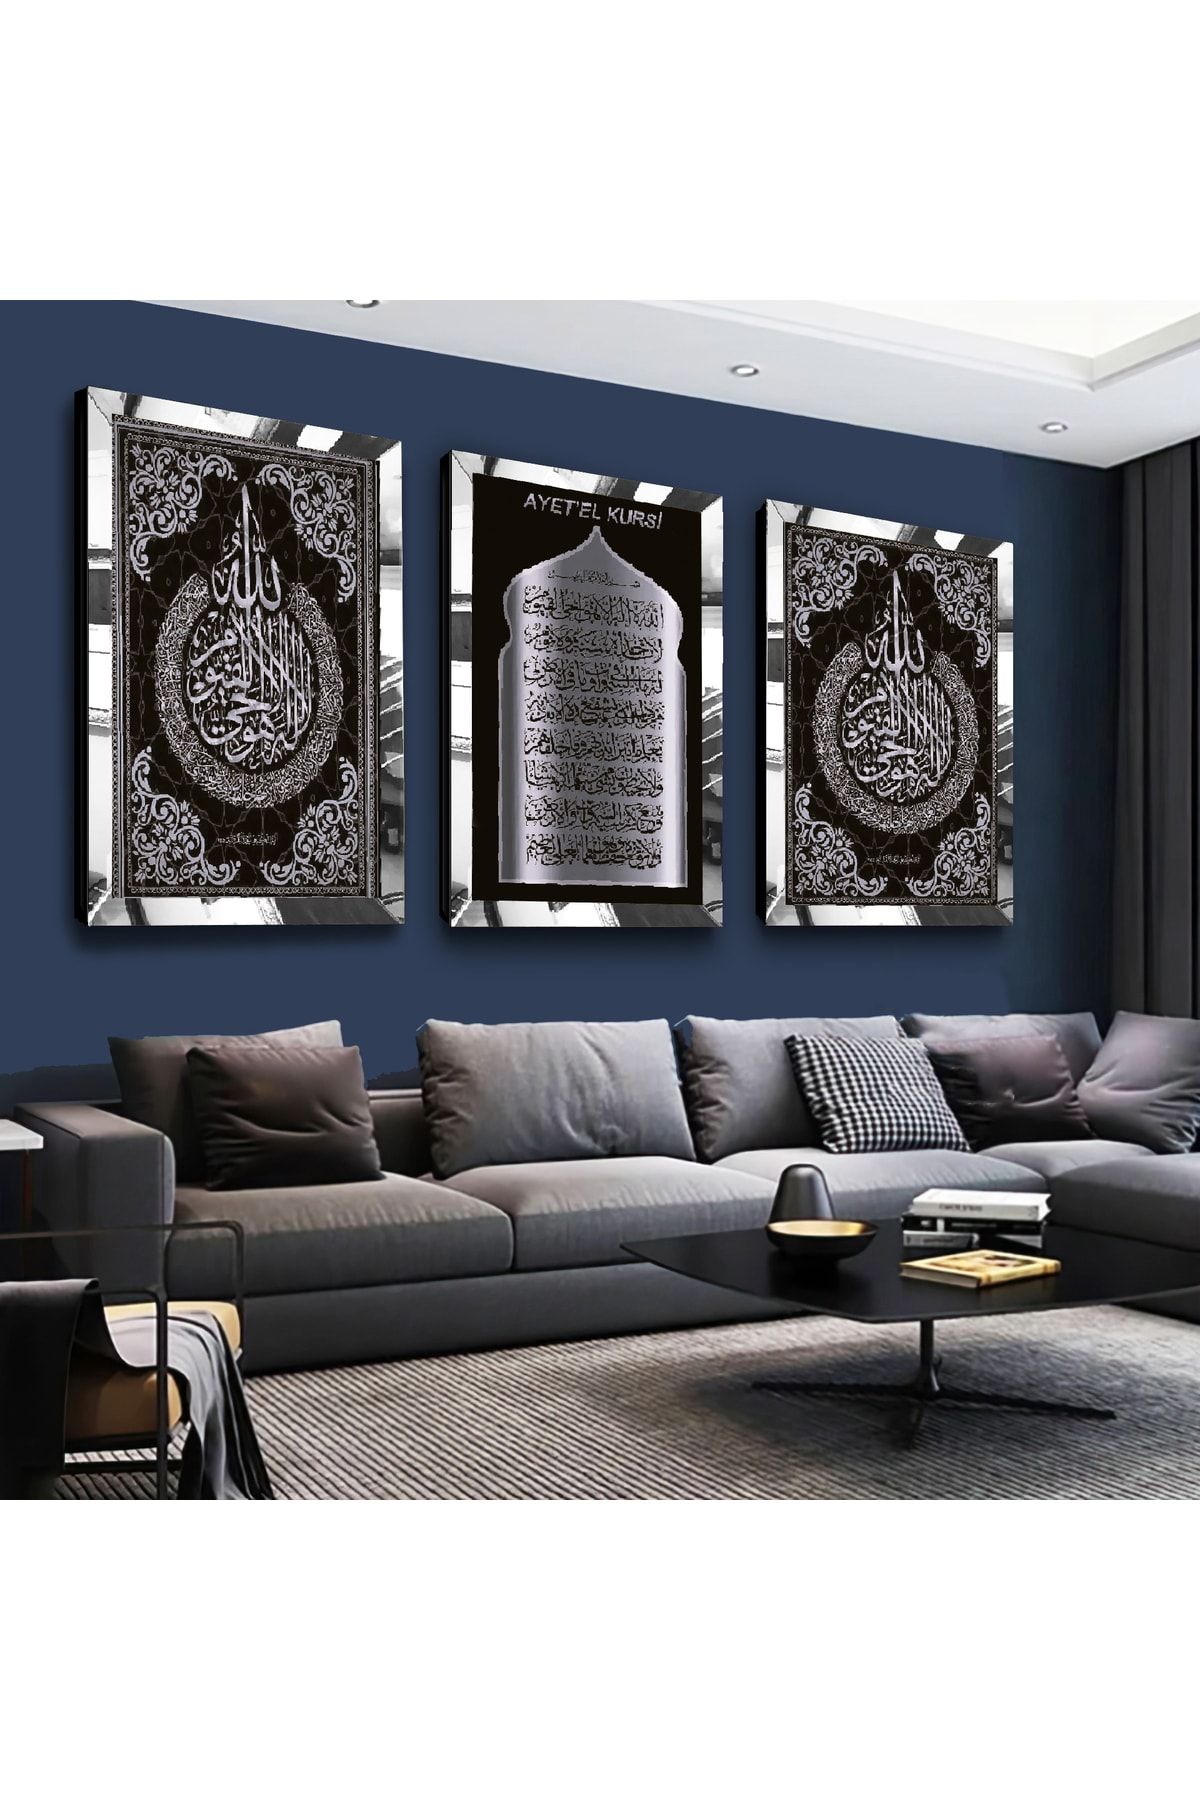 Zevahir Mobilya Dekorasyon Ayetel Kürsi Ve Allah Lafzı Gümüş Pleksi Kenar 3'lü Mdf Tablo Seti